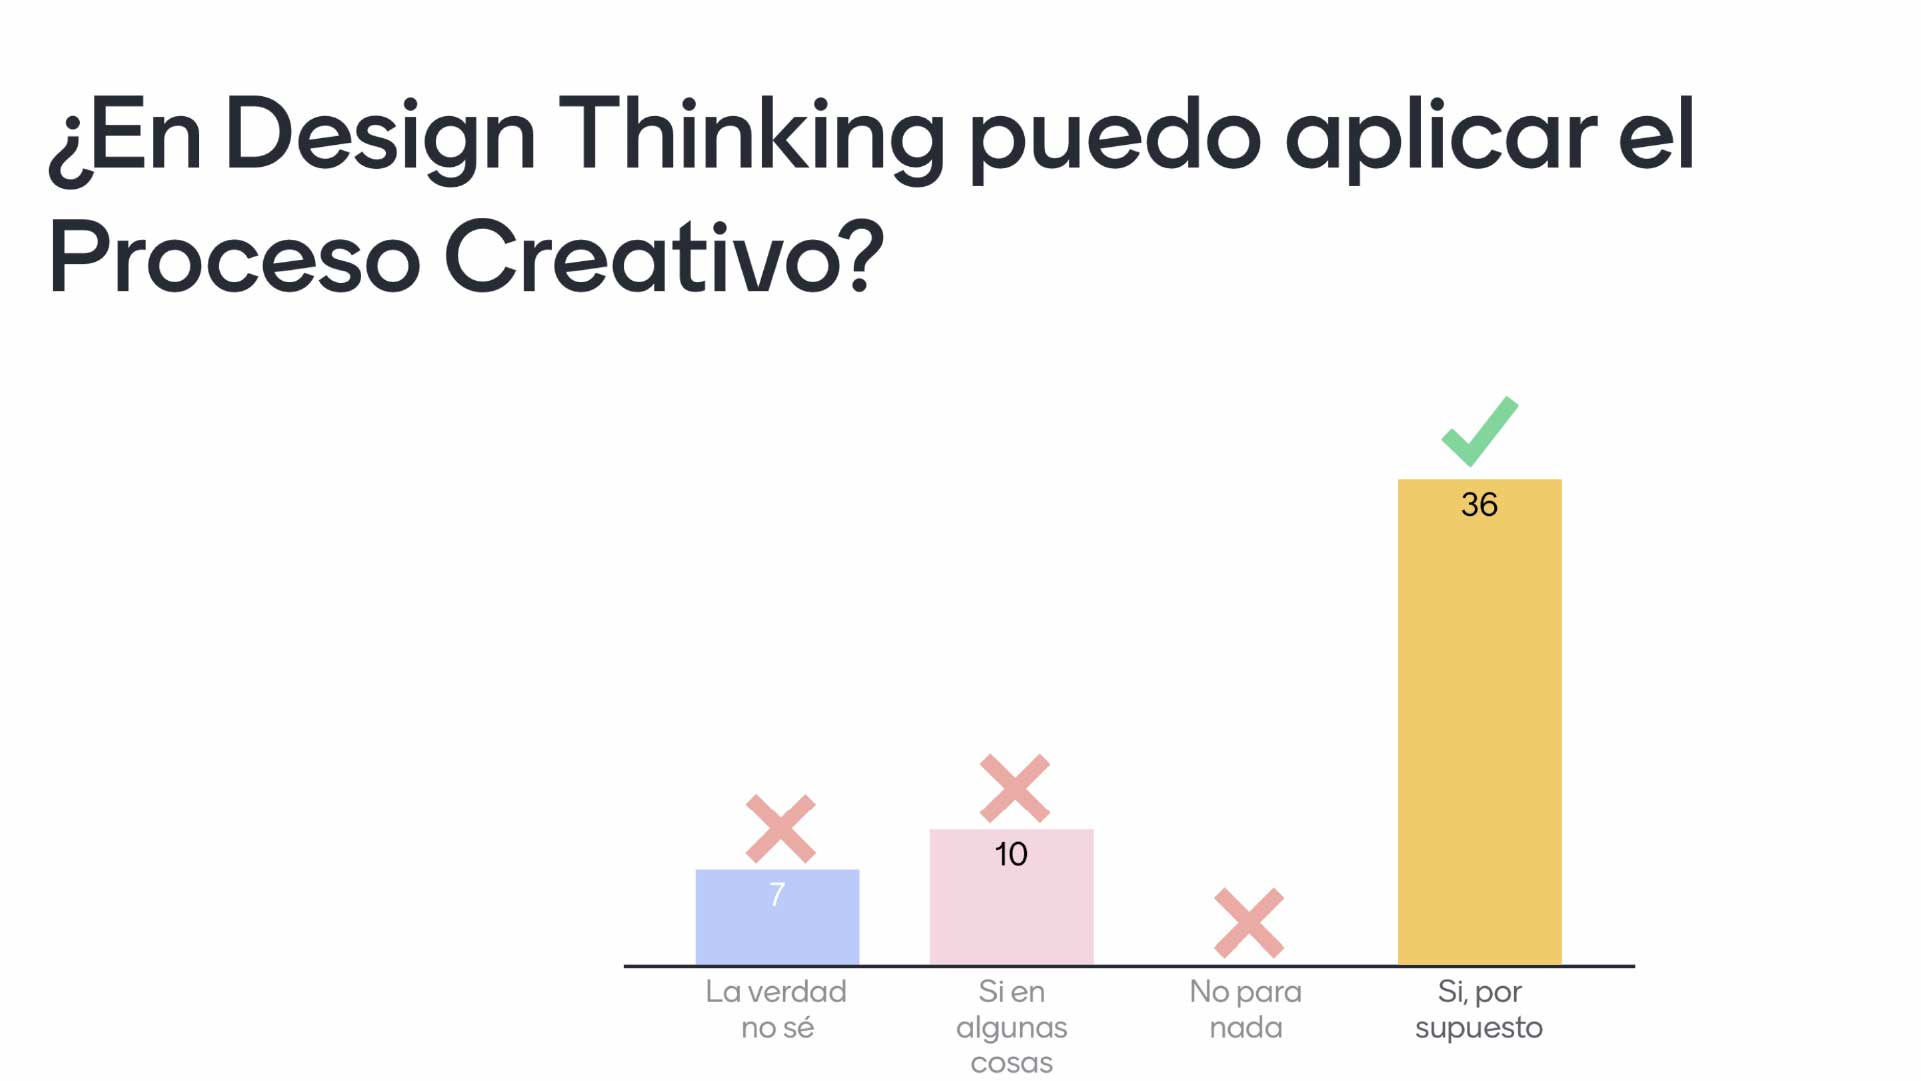 ¿En Design Thinking puedo aplicar el proceso creativo?